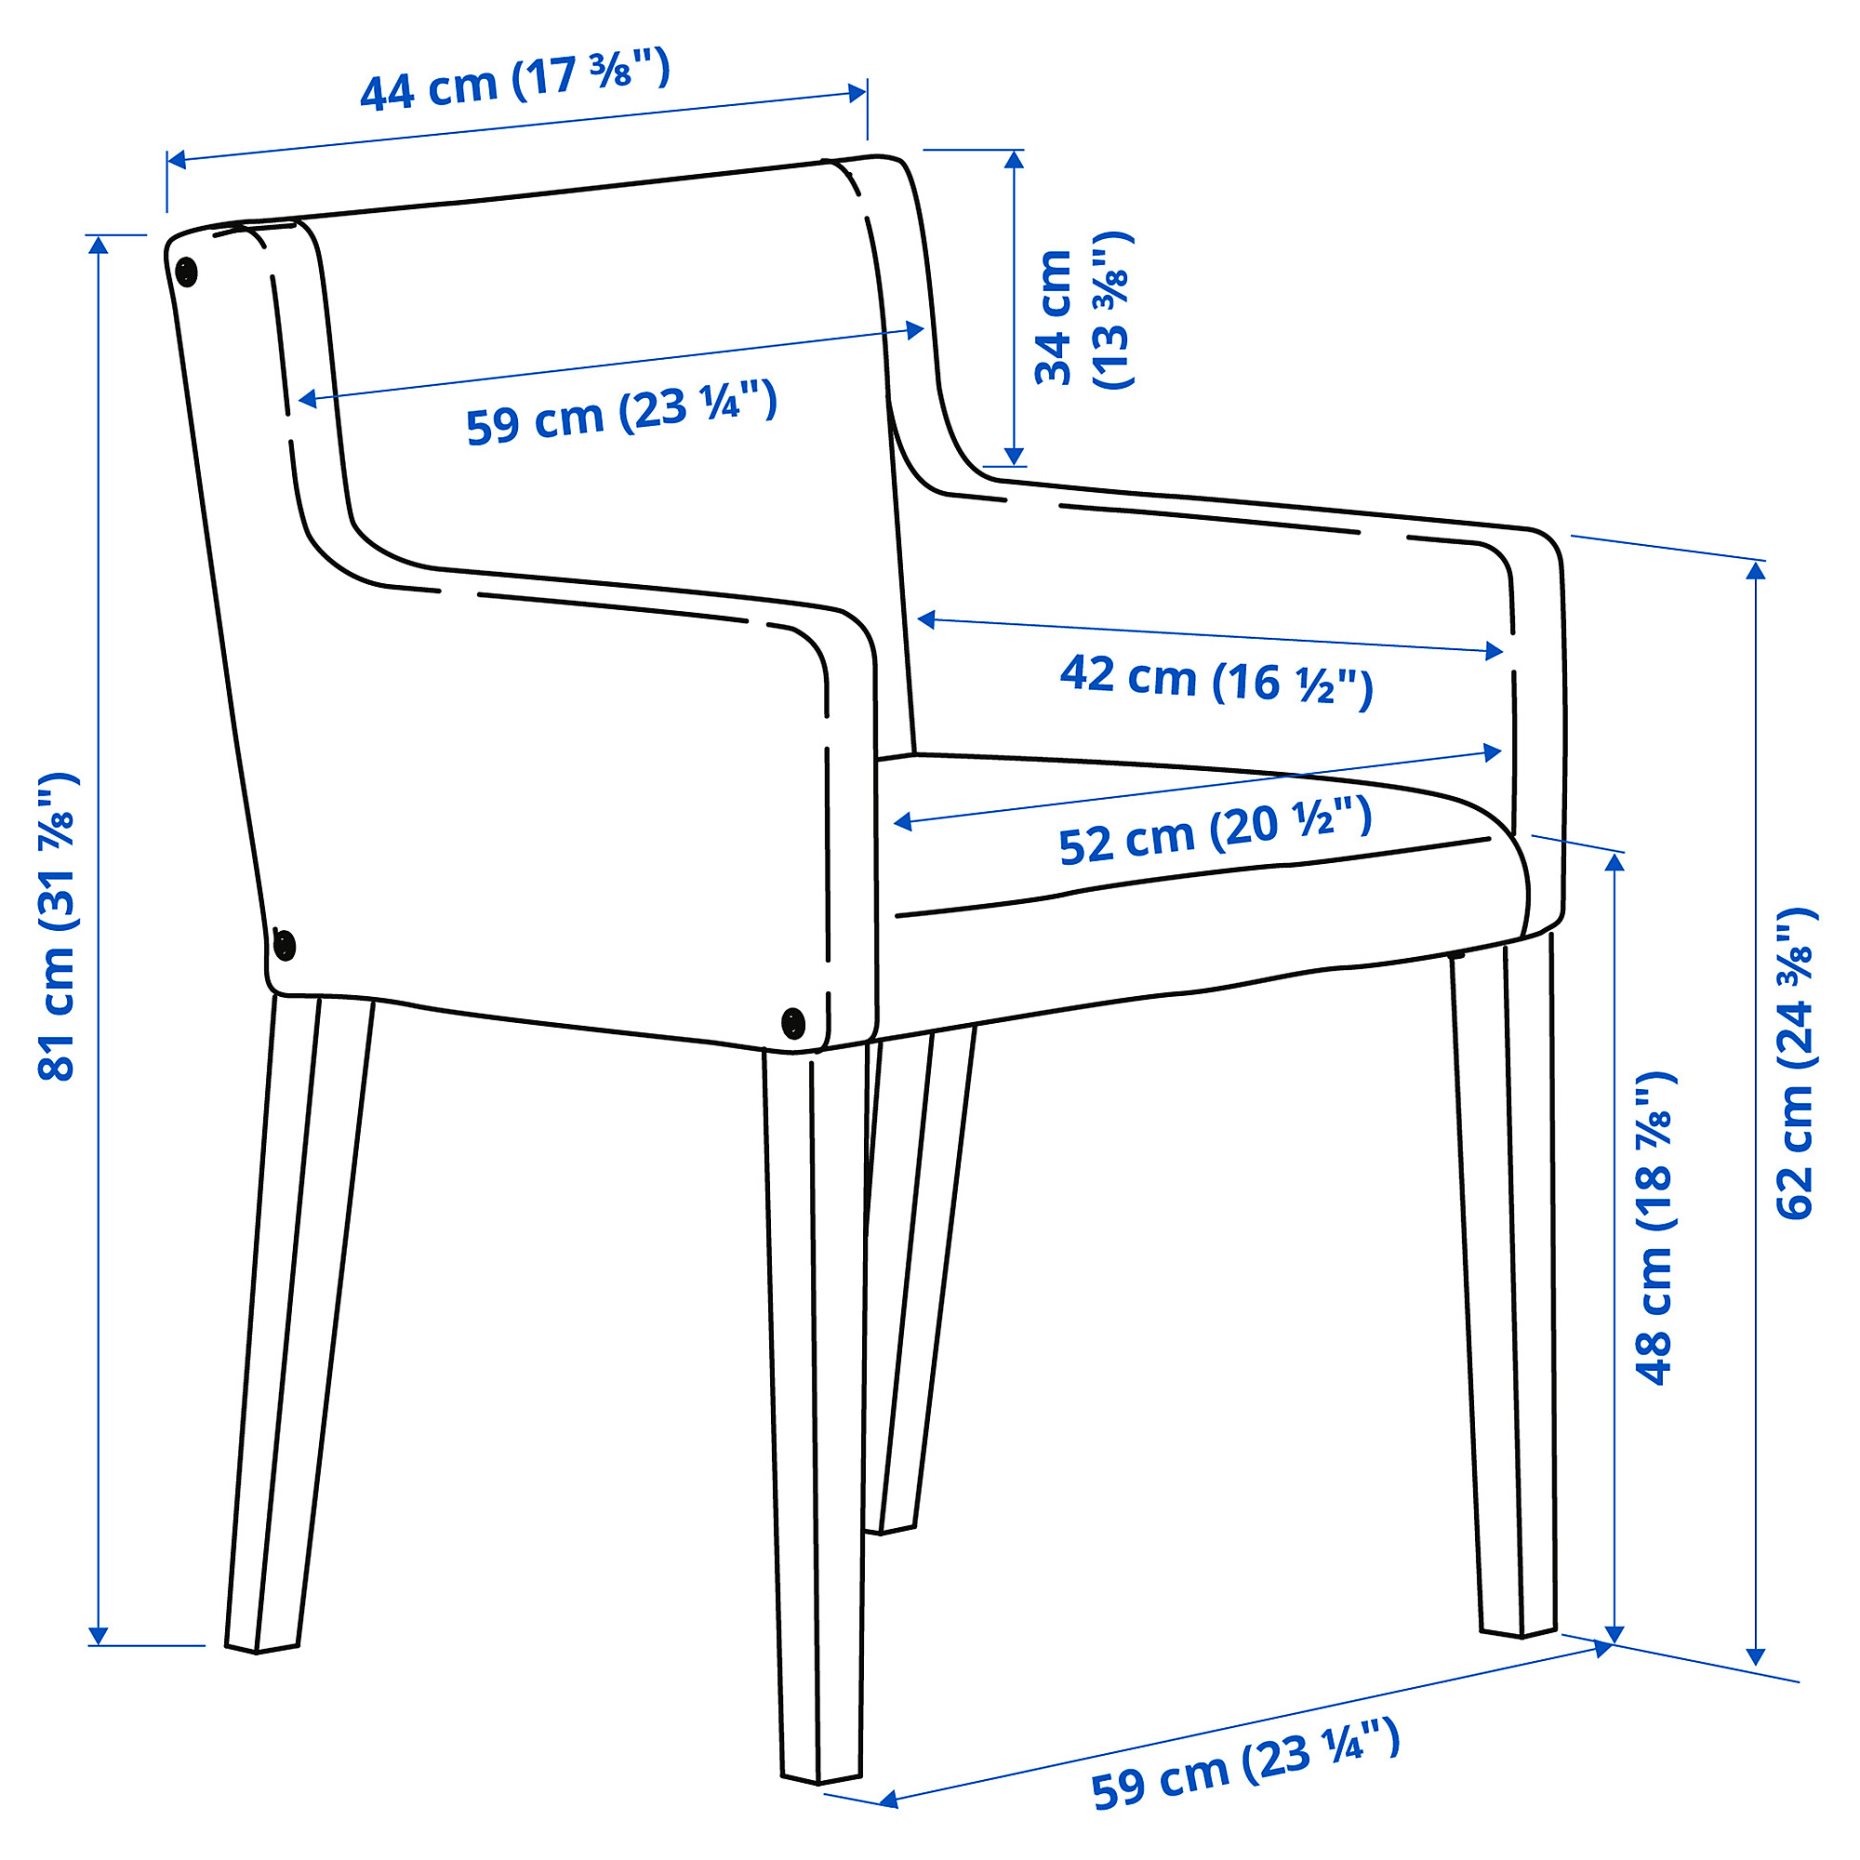 MÅRENÄS, chair with armrests, 995.143.88